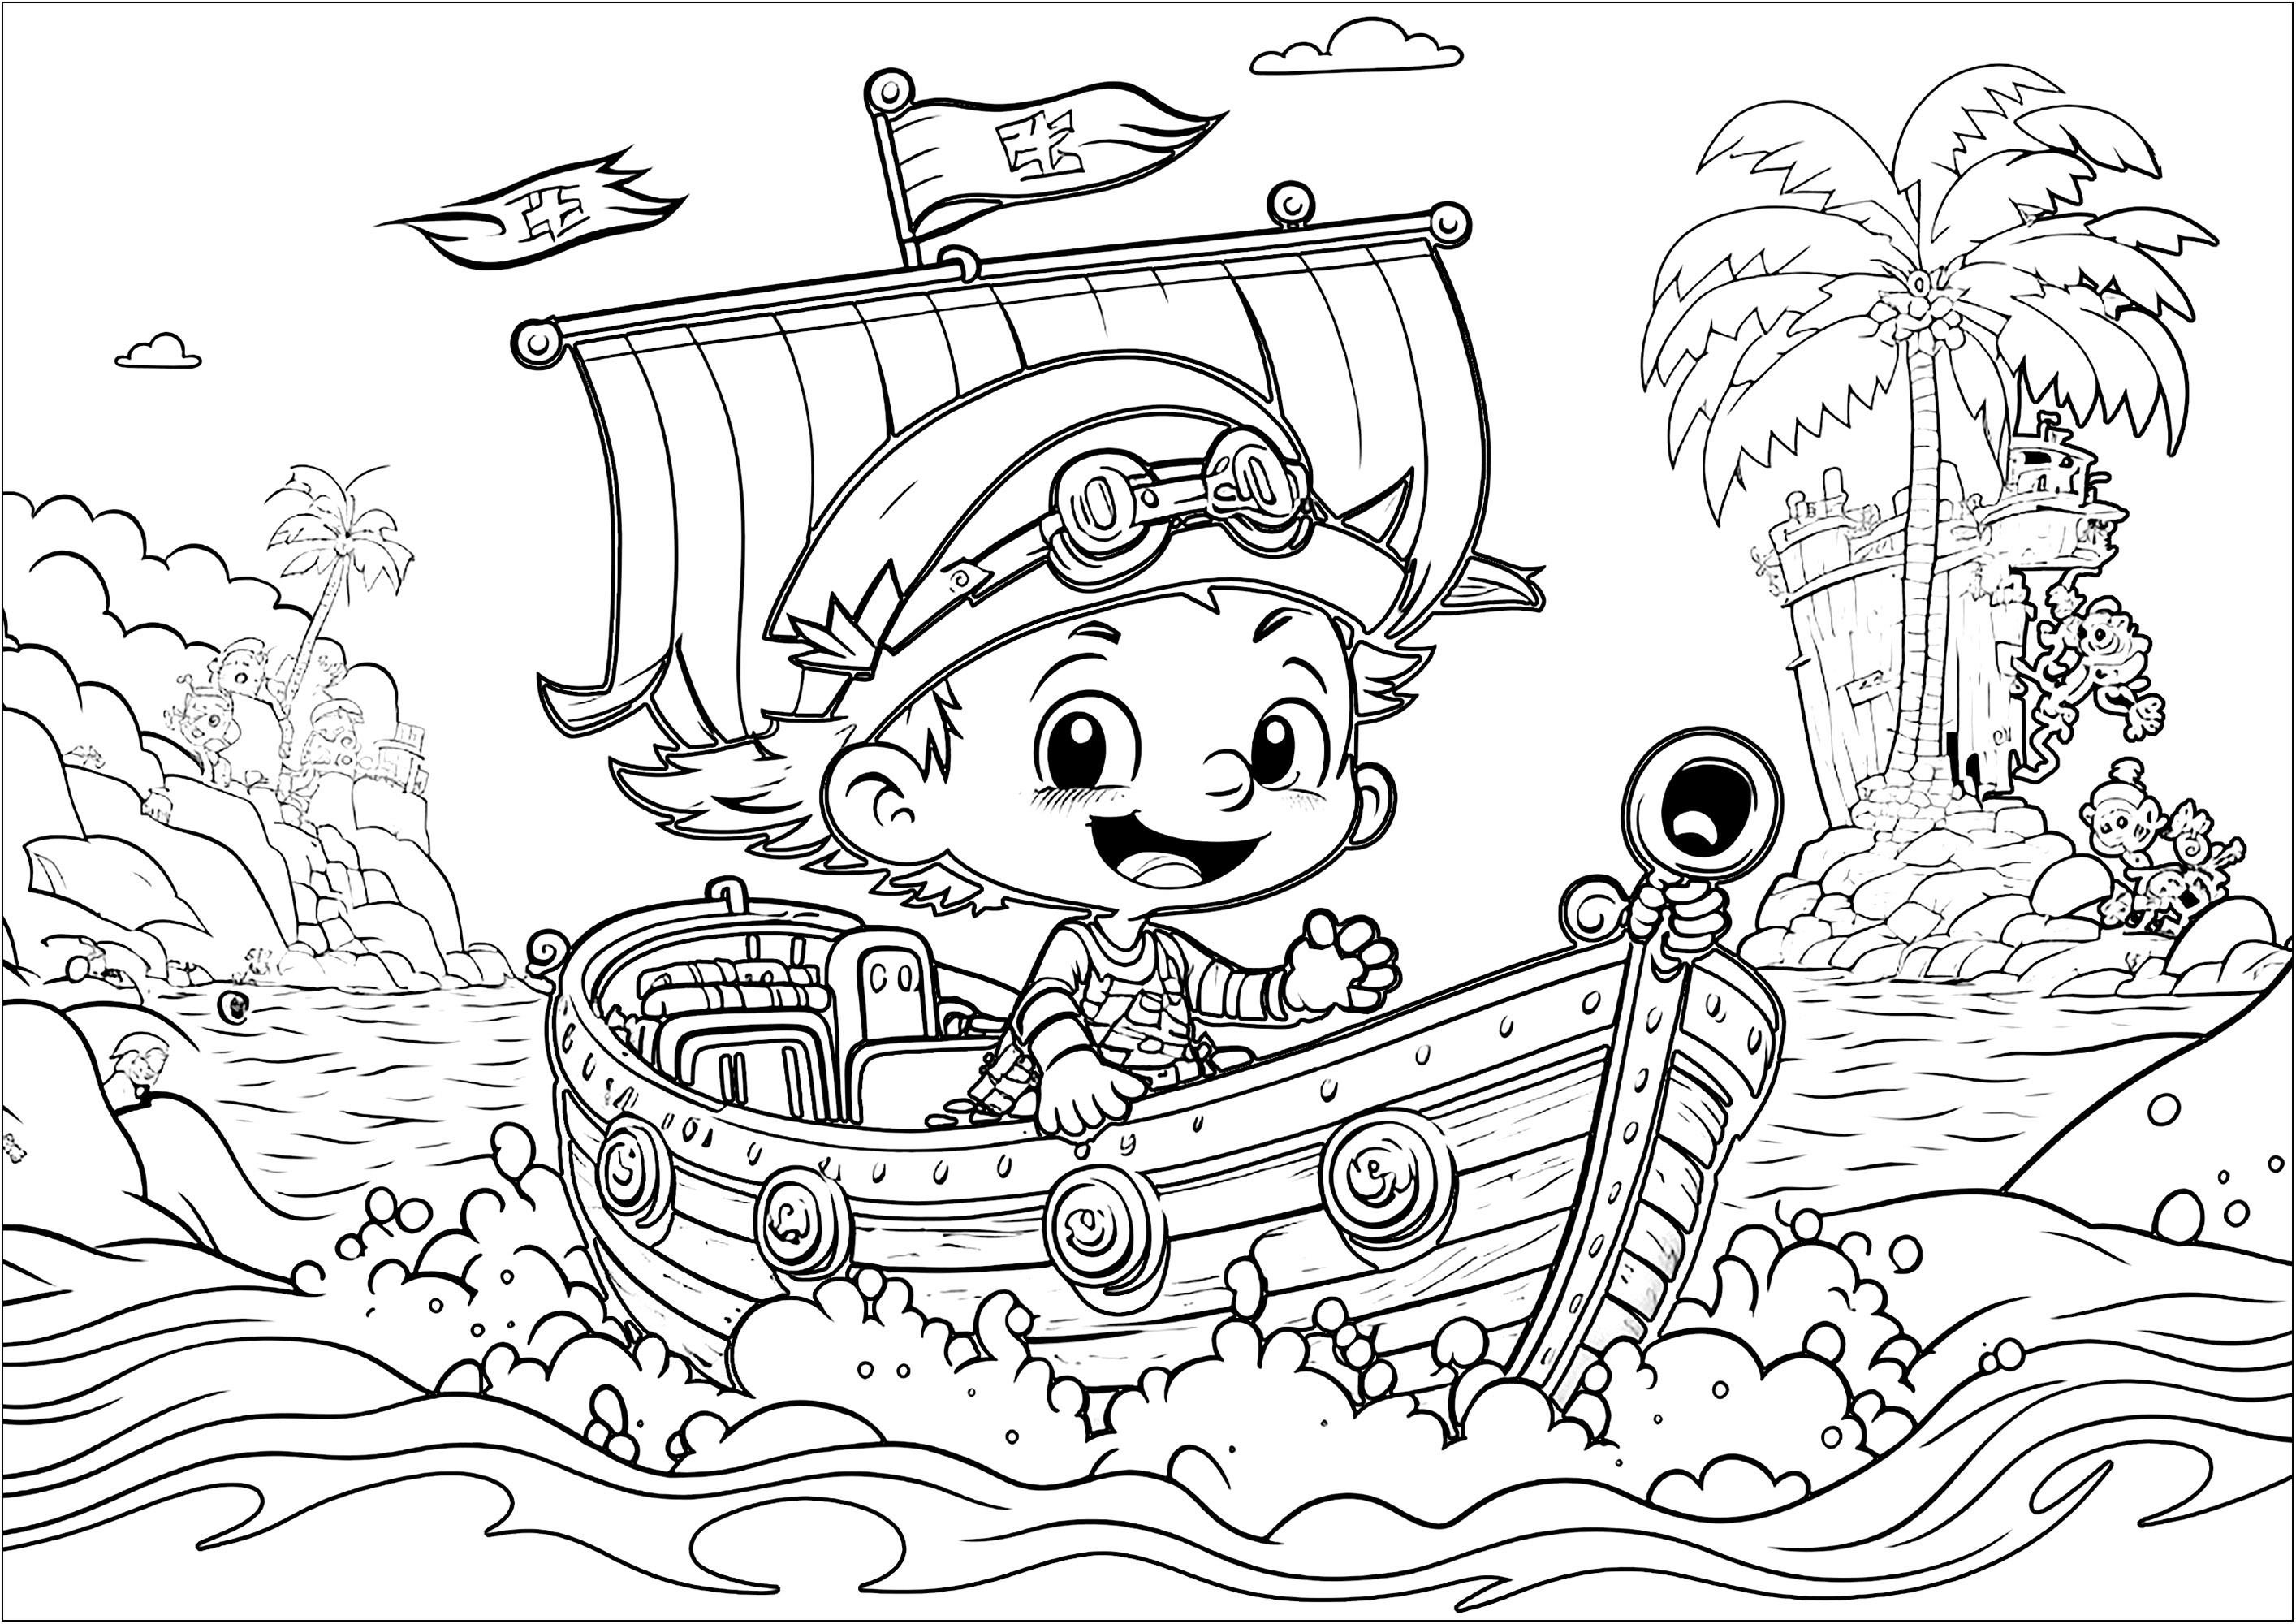 Un simpático pirata para colorear, camino de nuevas aventuras en su hermoso barco. El estilo de este libro para colorear es similar al de los personajes de Disney / Pixar.
